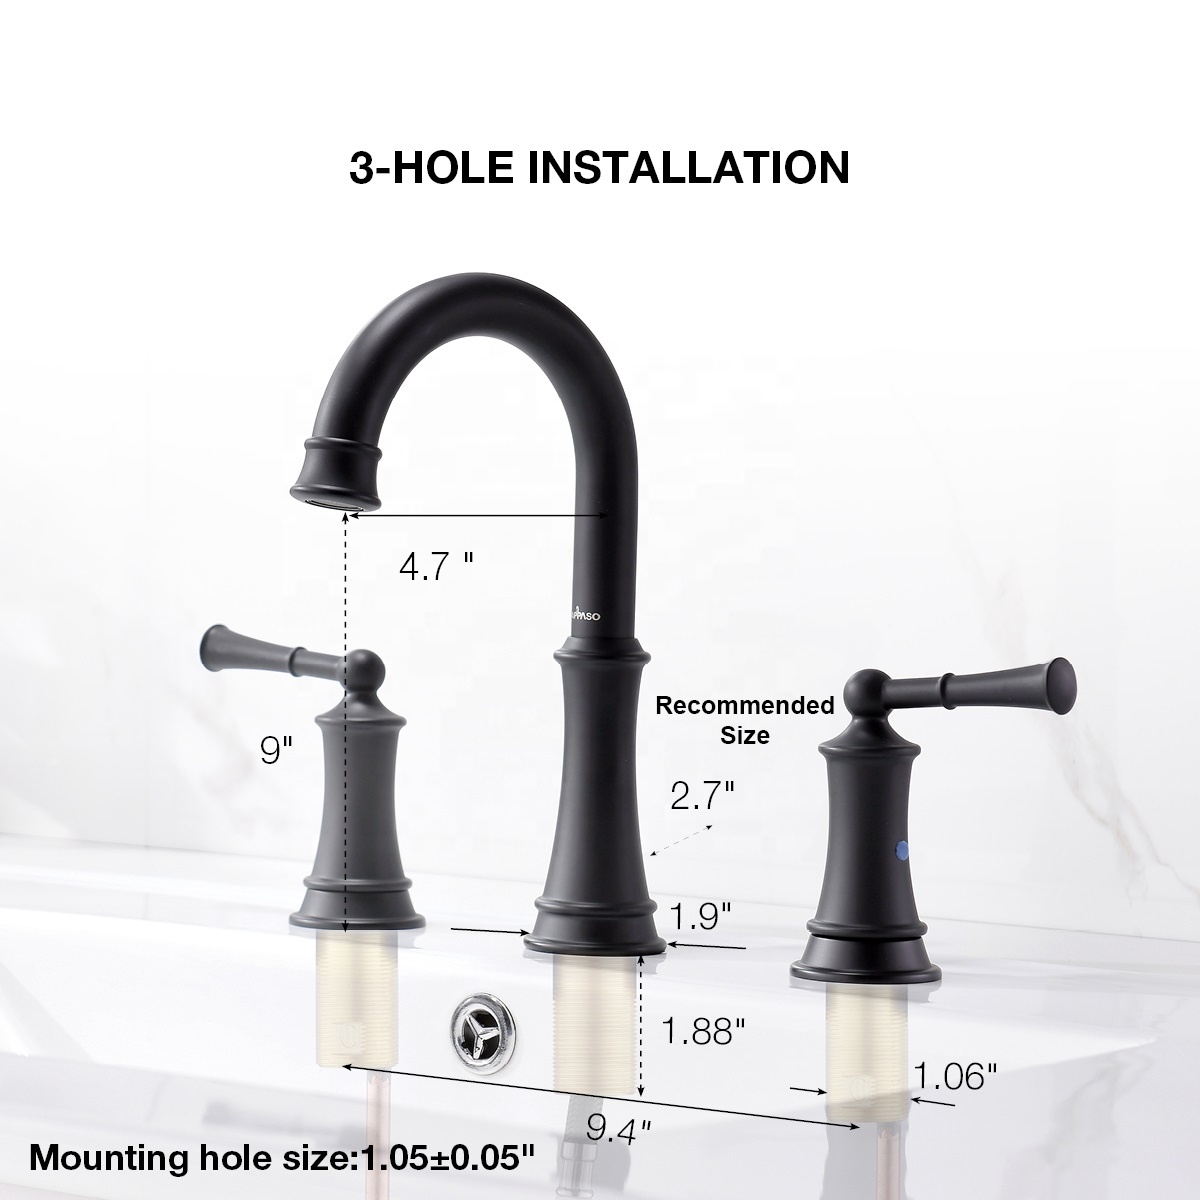 APB122-MB 3-hole Basin Faucet Mixer Bathroom Twisted Tube Fashion Design Black Basin Faucet